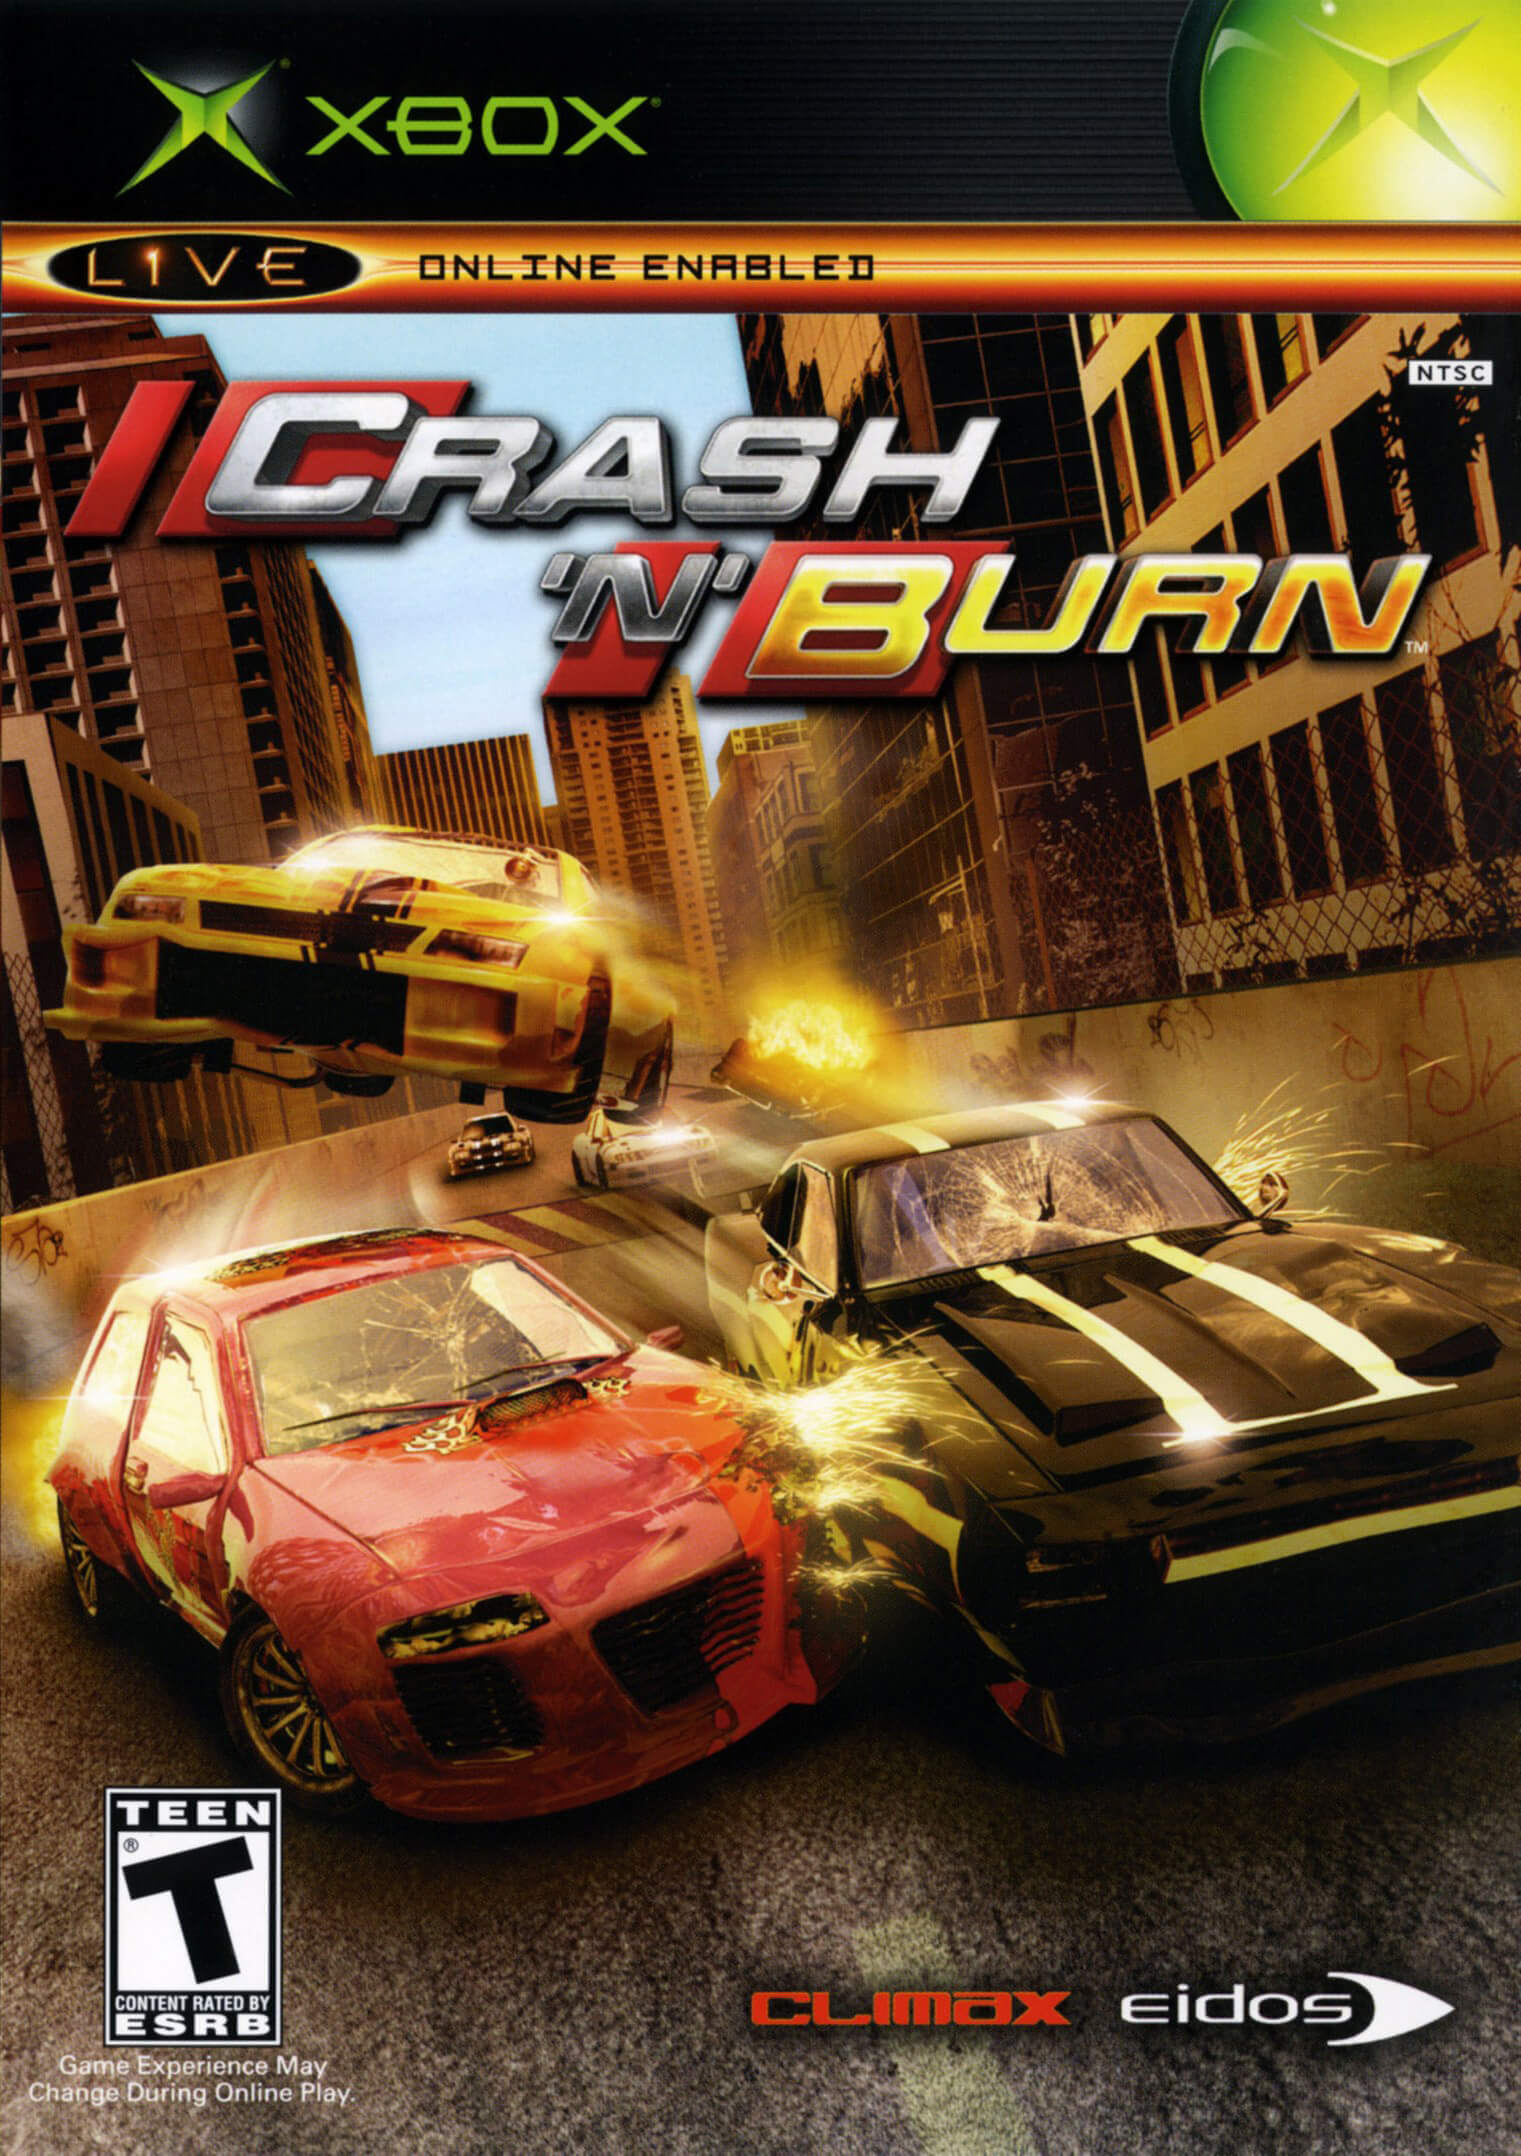 Crash 'n Burn